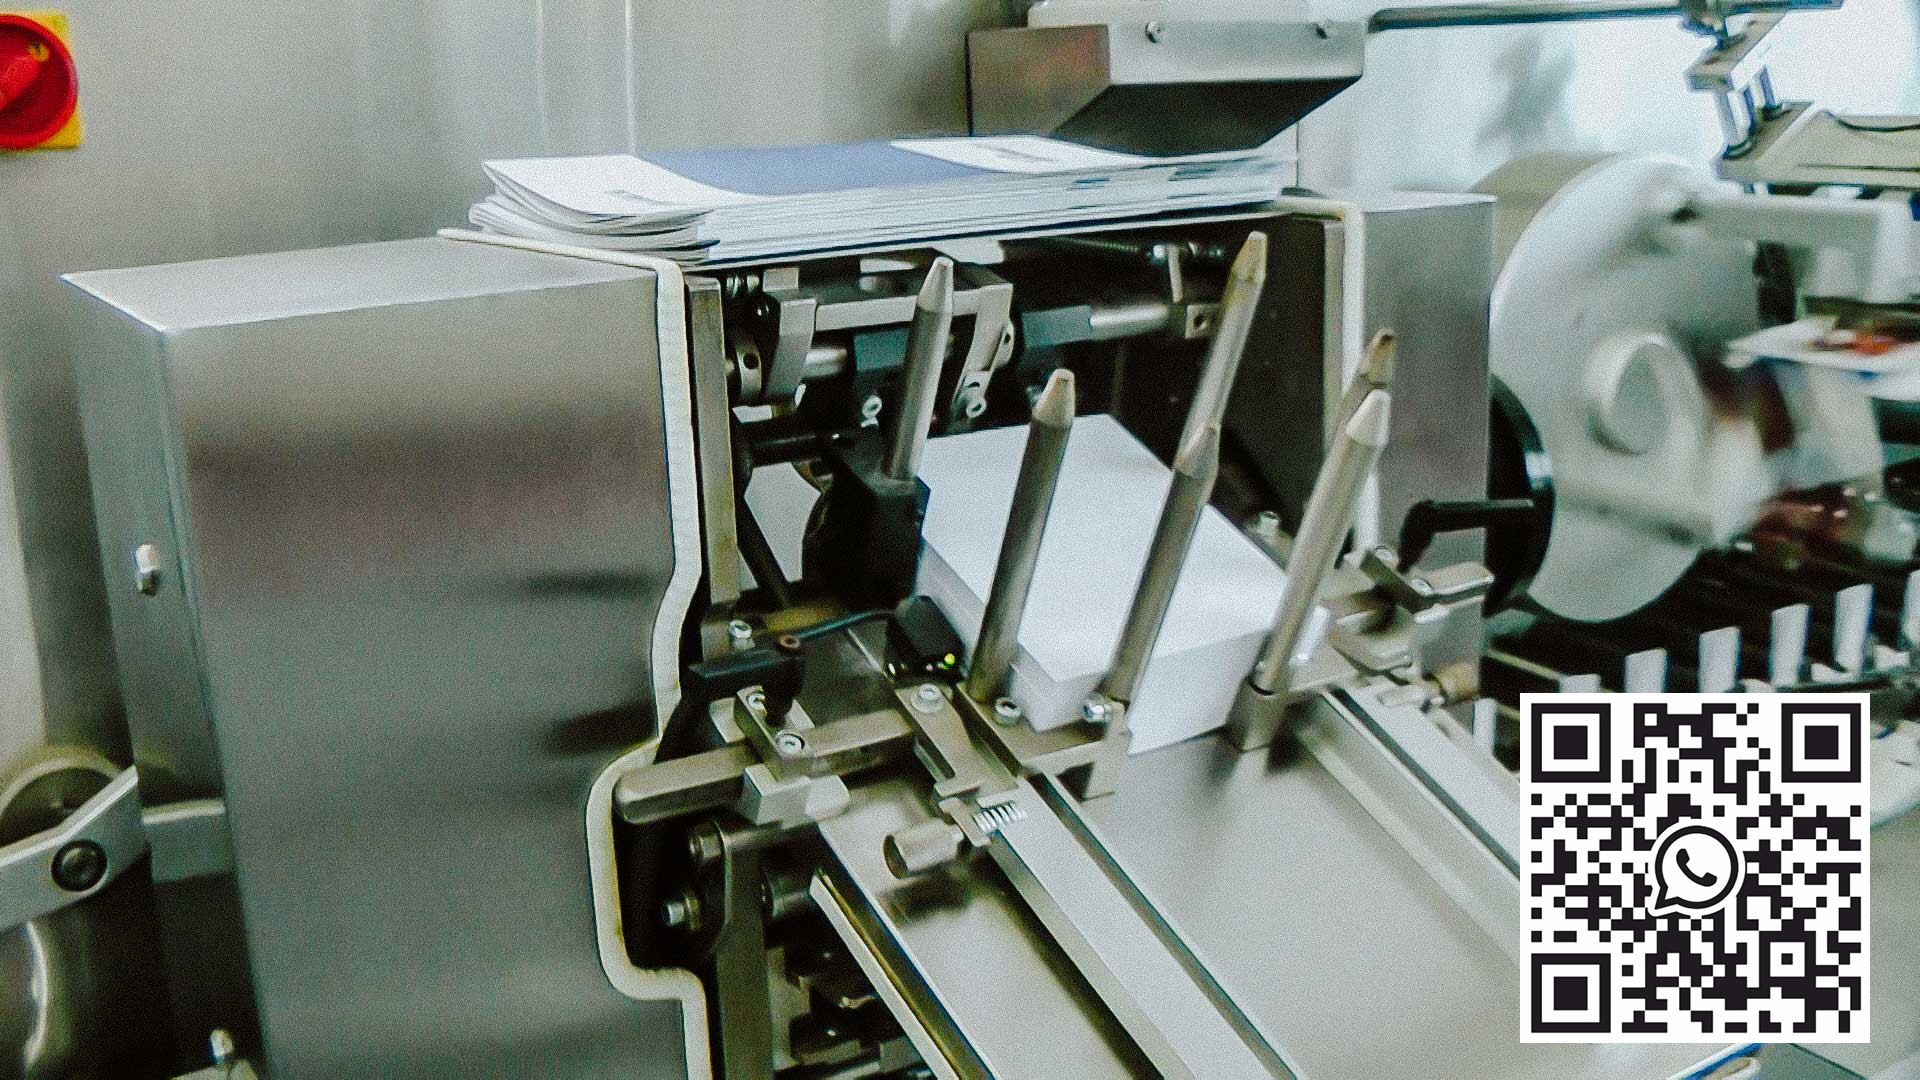 Vysokorychlostní lepenkový stroj s puchýřkem a papírovou instrukcí pro aplikaci léku